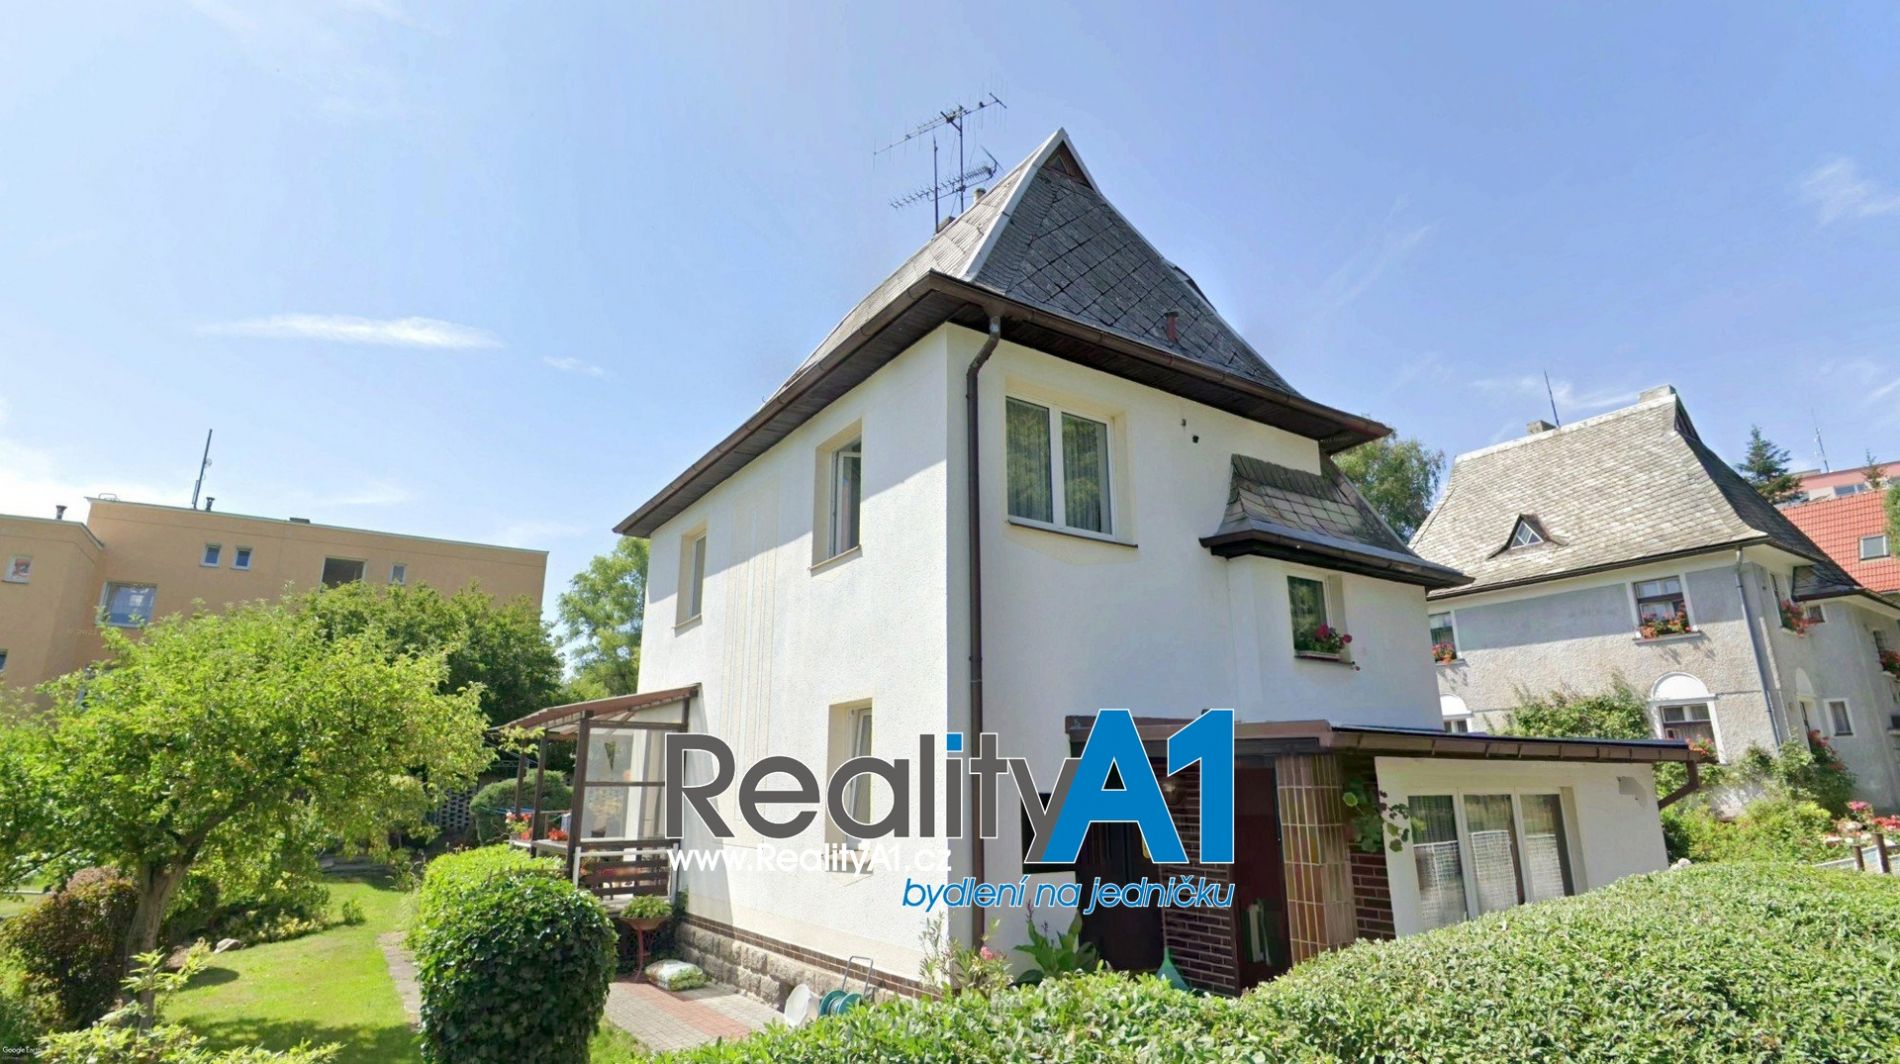 REZERVACE Prodej rodinného domu 140 m2 s garáží a dílnou, pozemek 515 m2 - Liberec - Ruprechtice